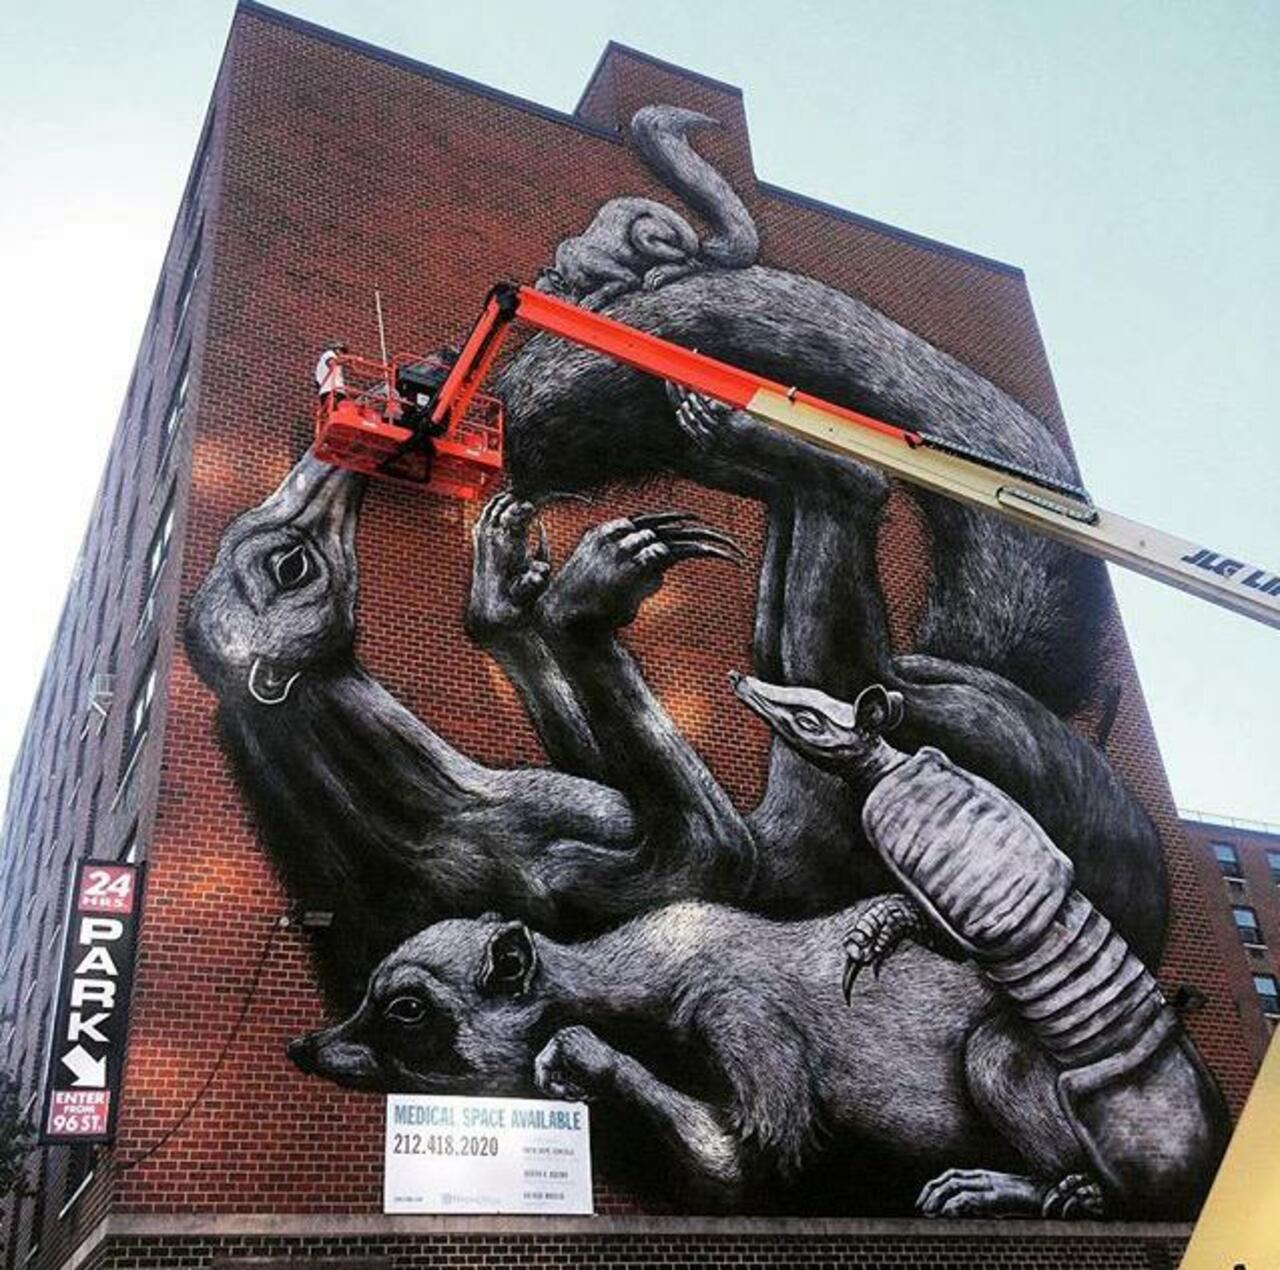 Street Art in progress by ROA in NYC

#art #graffiti #mural #streetart http://t.co/gytDomCCvw